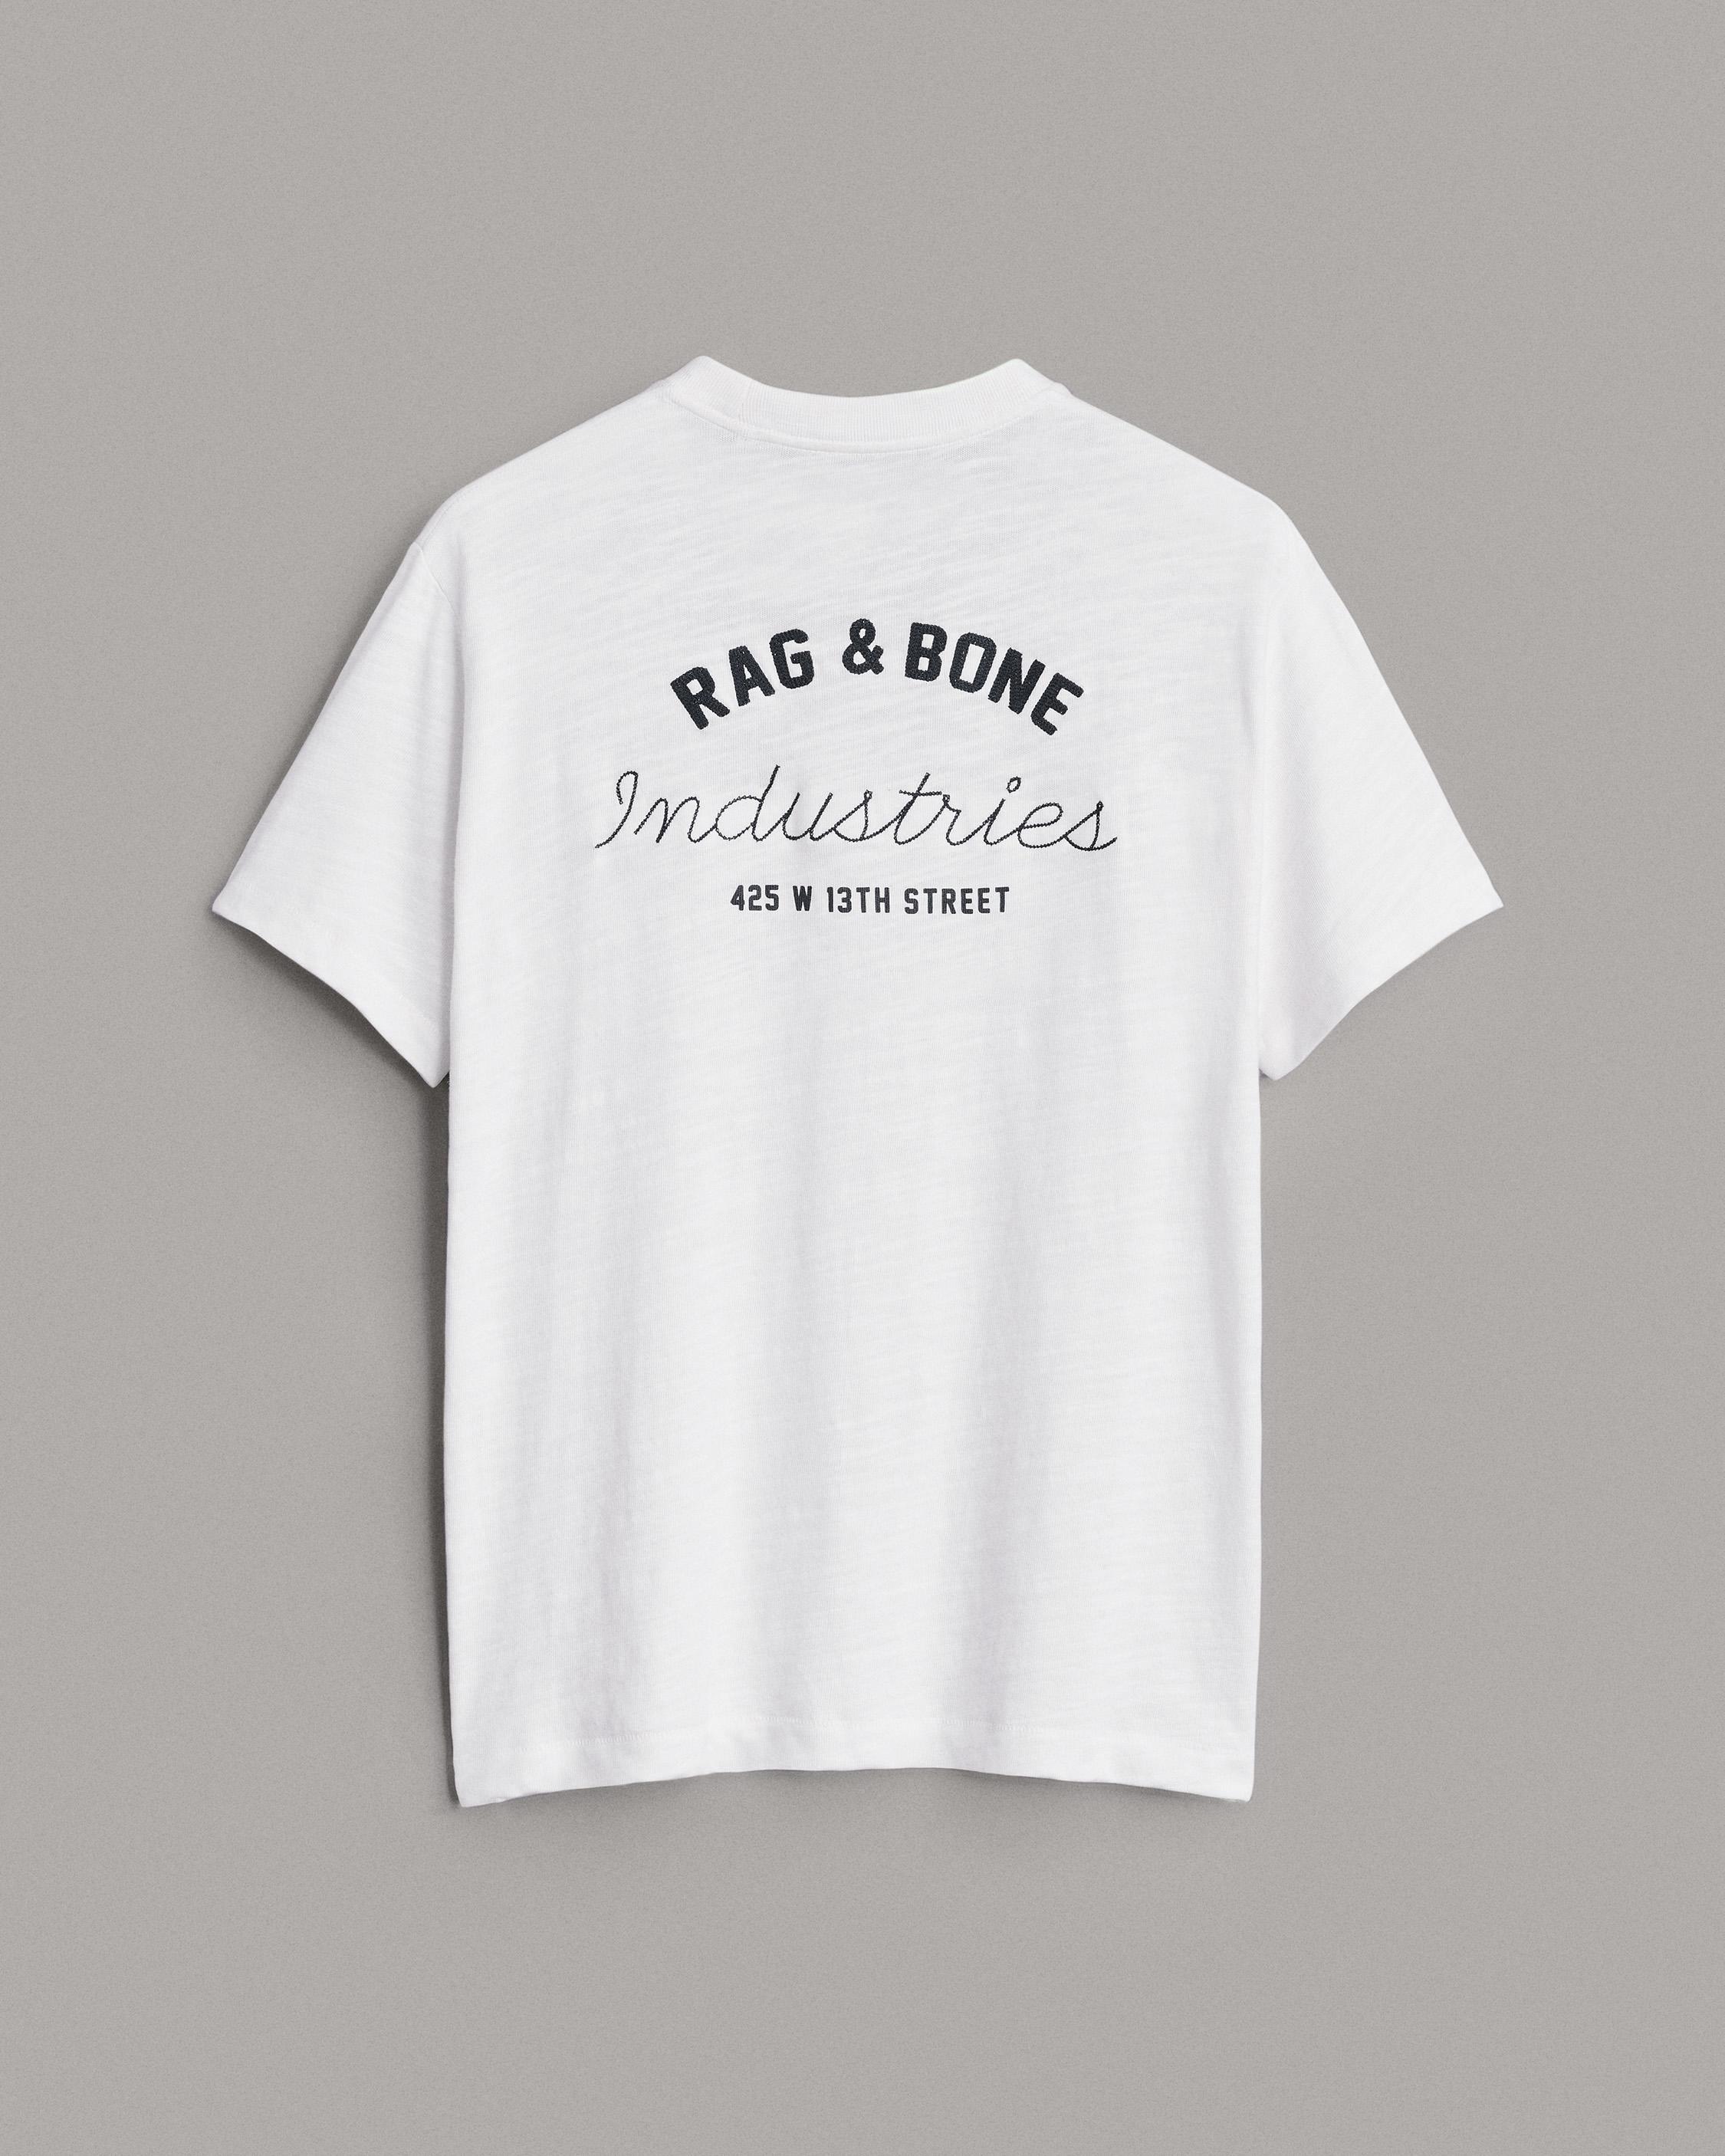 Buy the Rag & Bone Industries Tee | rag & bone